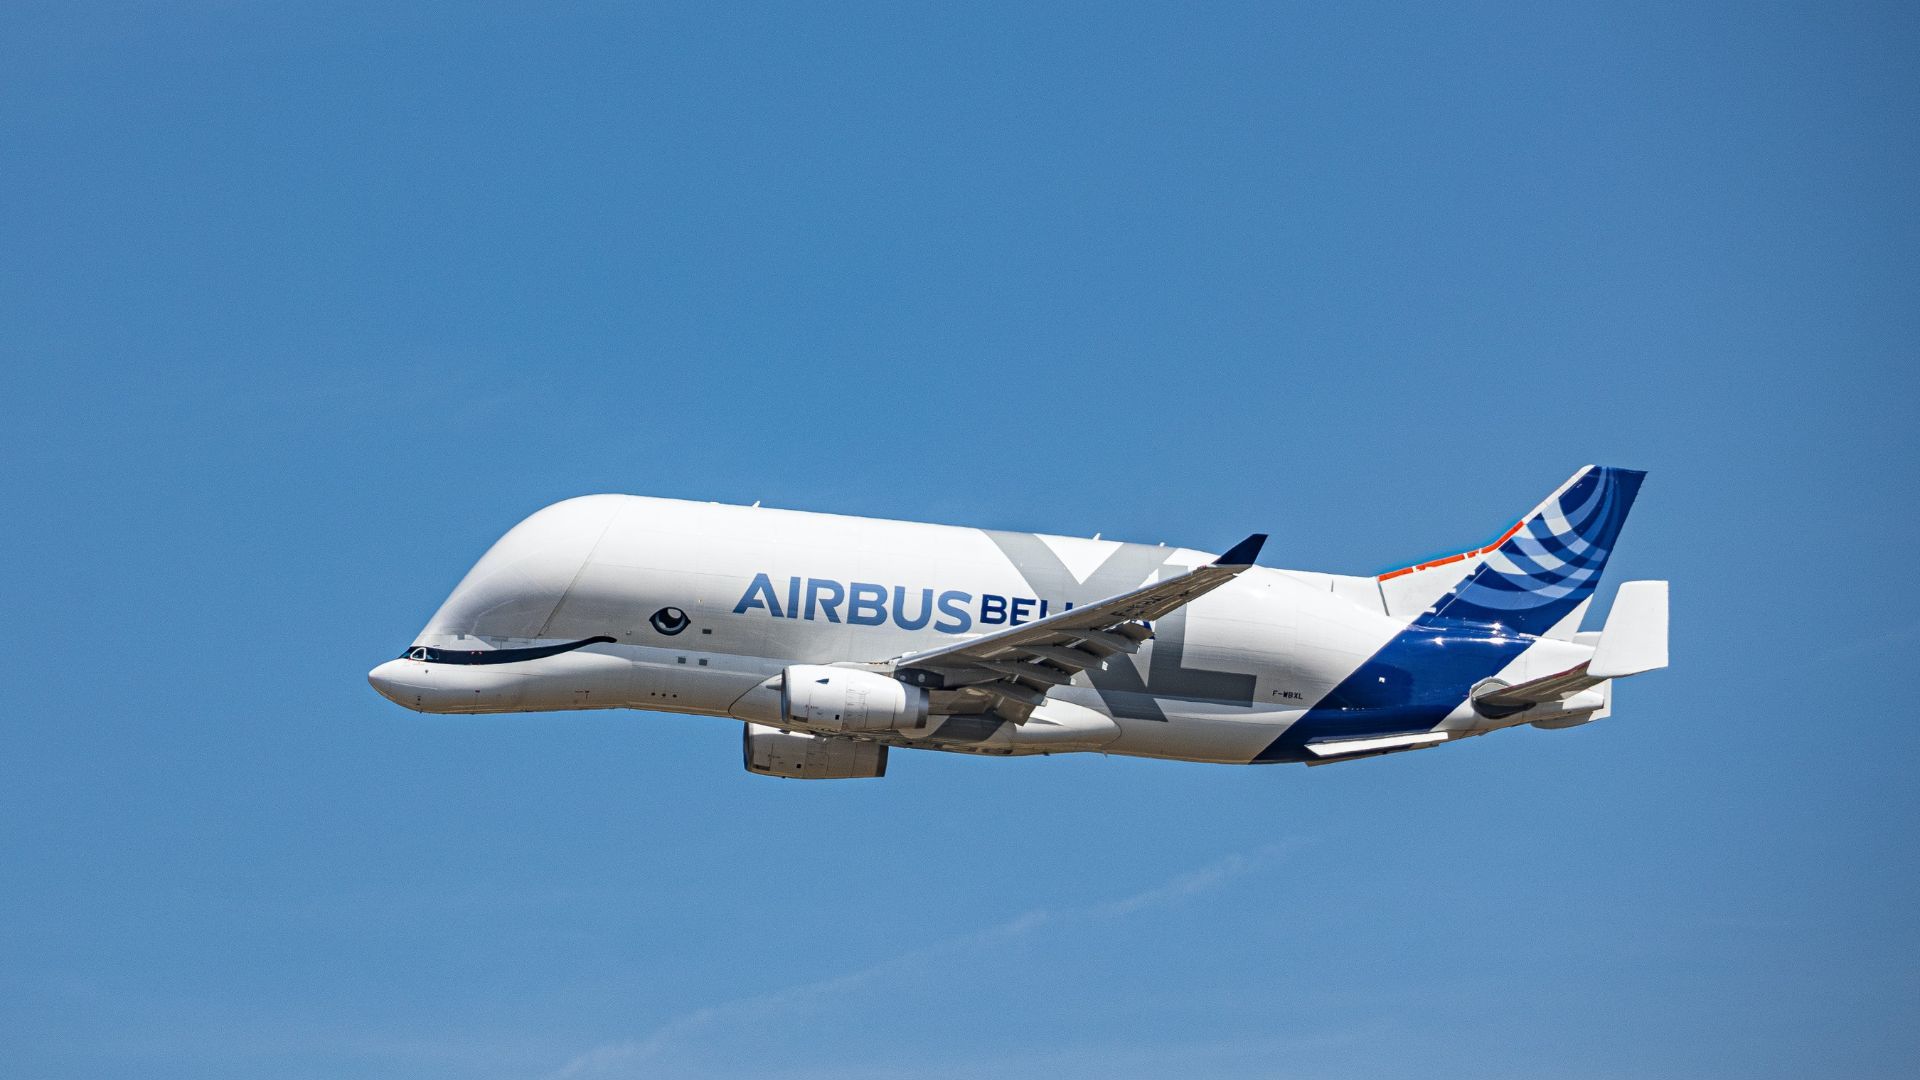 Airbus-Beluga.jpg